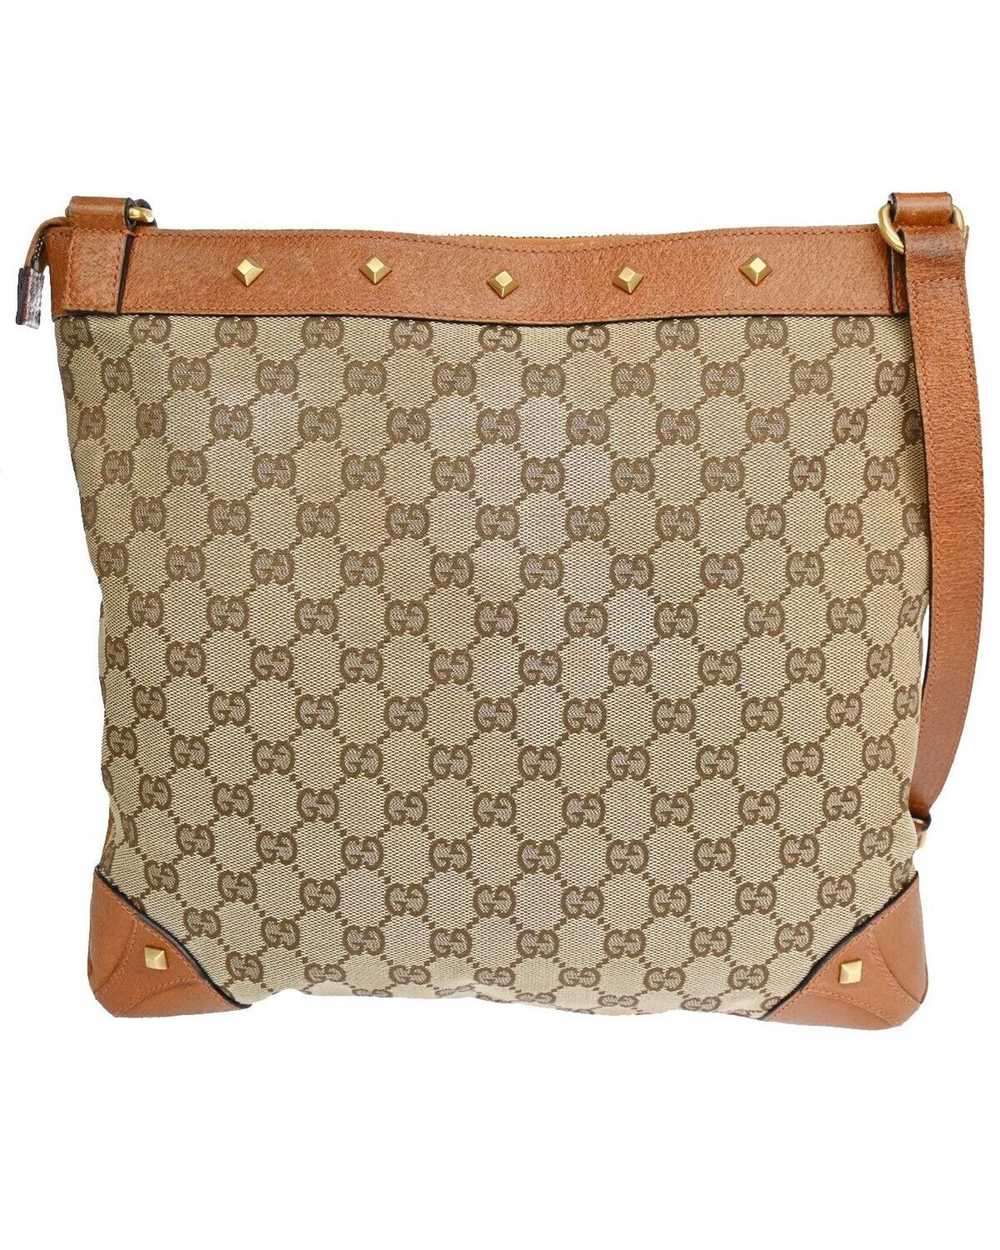 Gucci Canvas Shoulder Bag by Luxury Designer - image 3